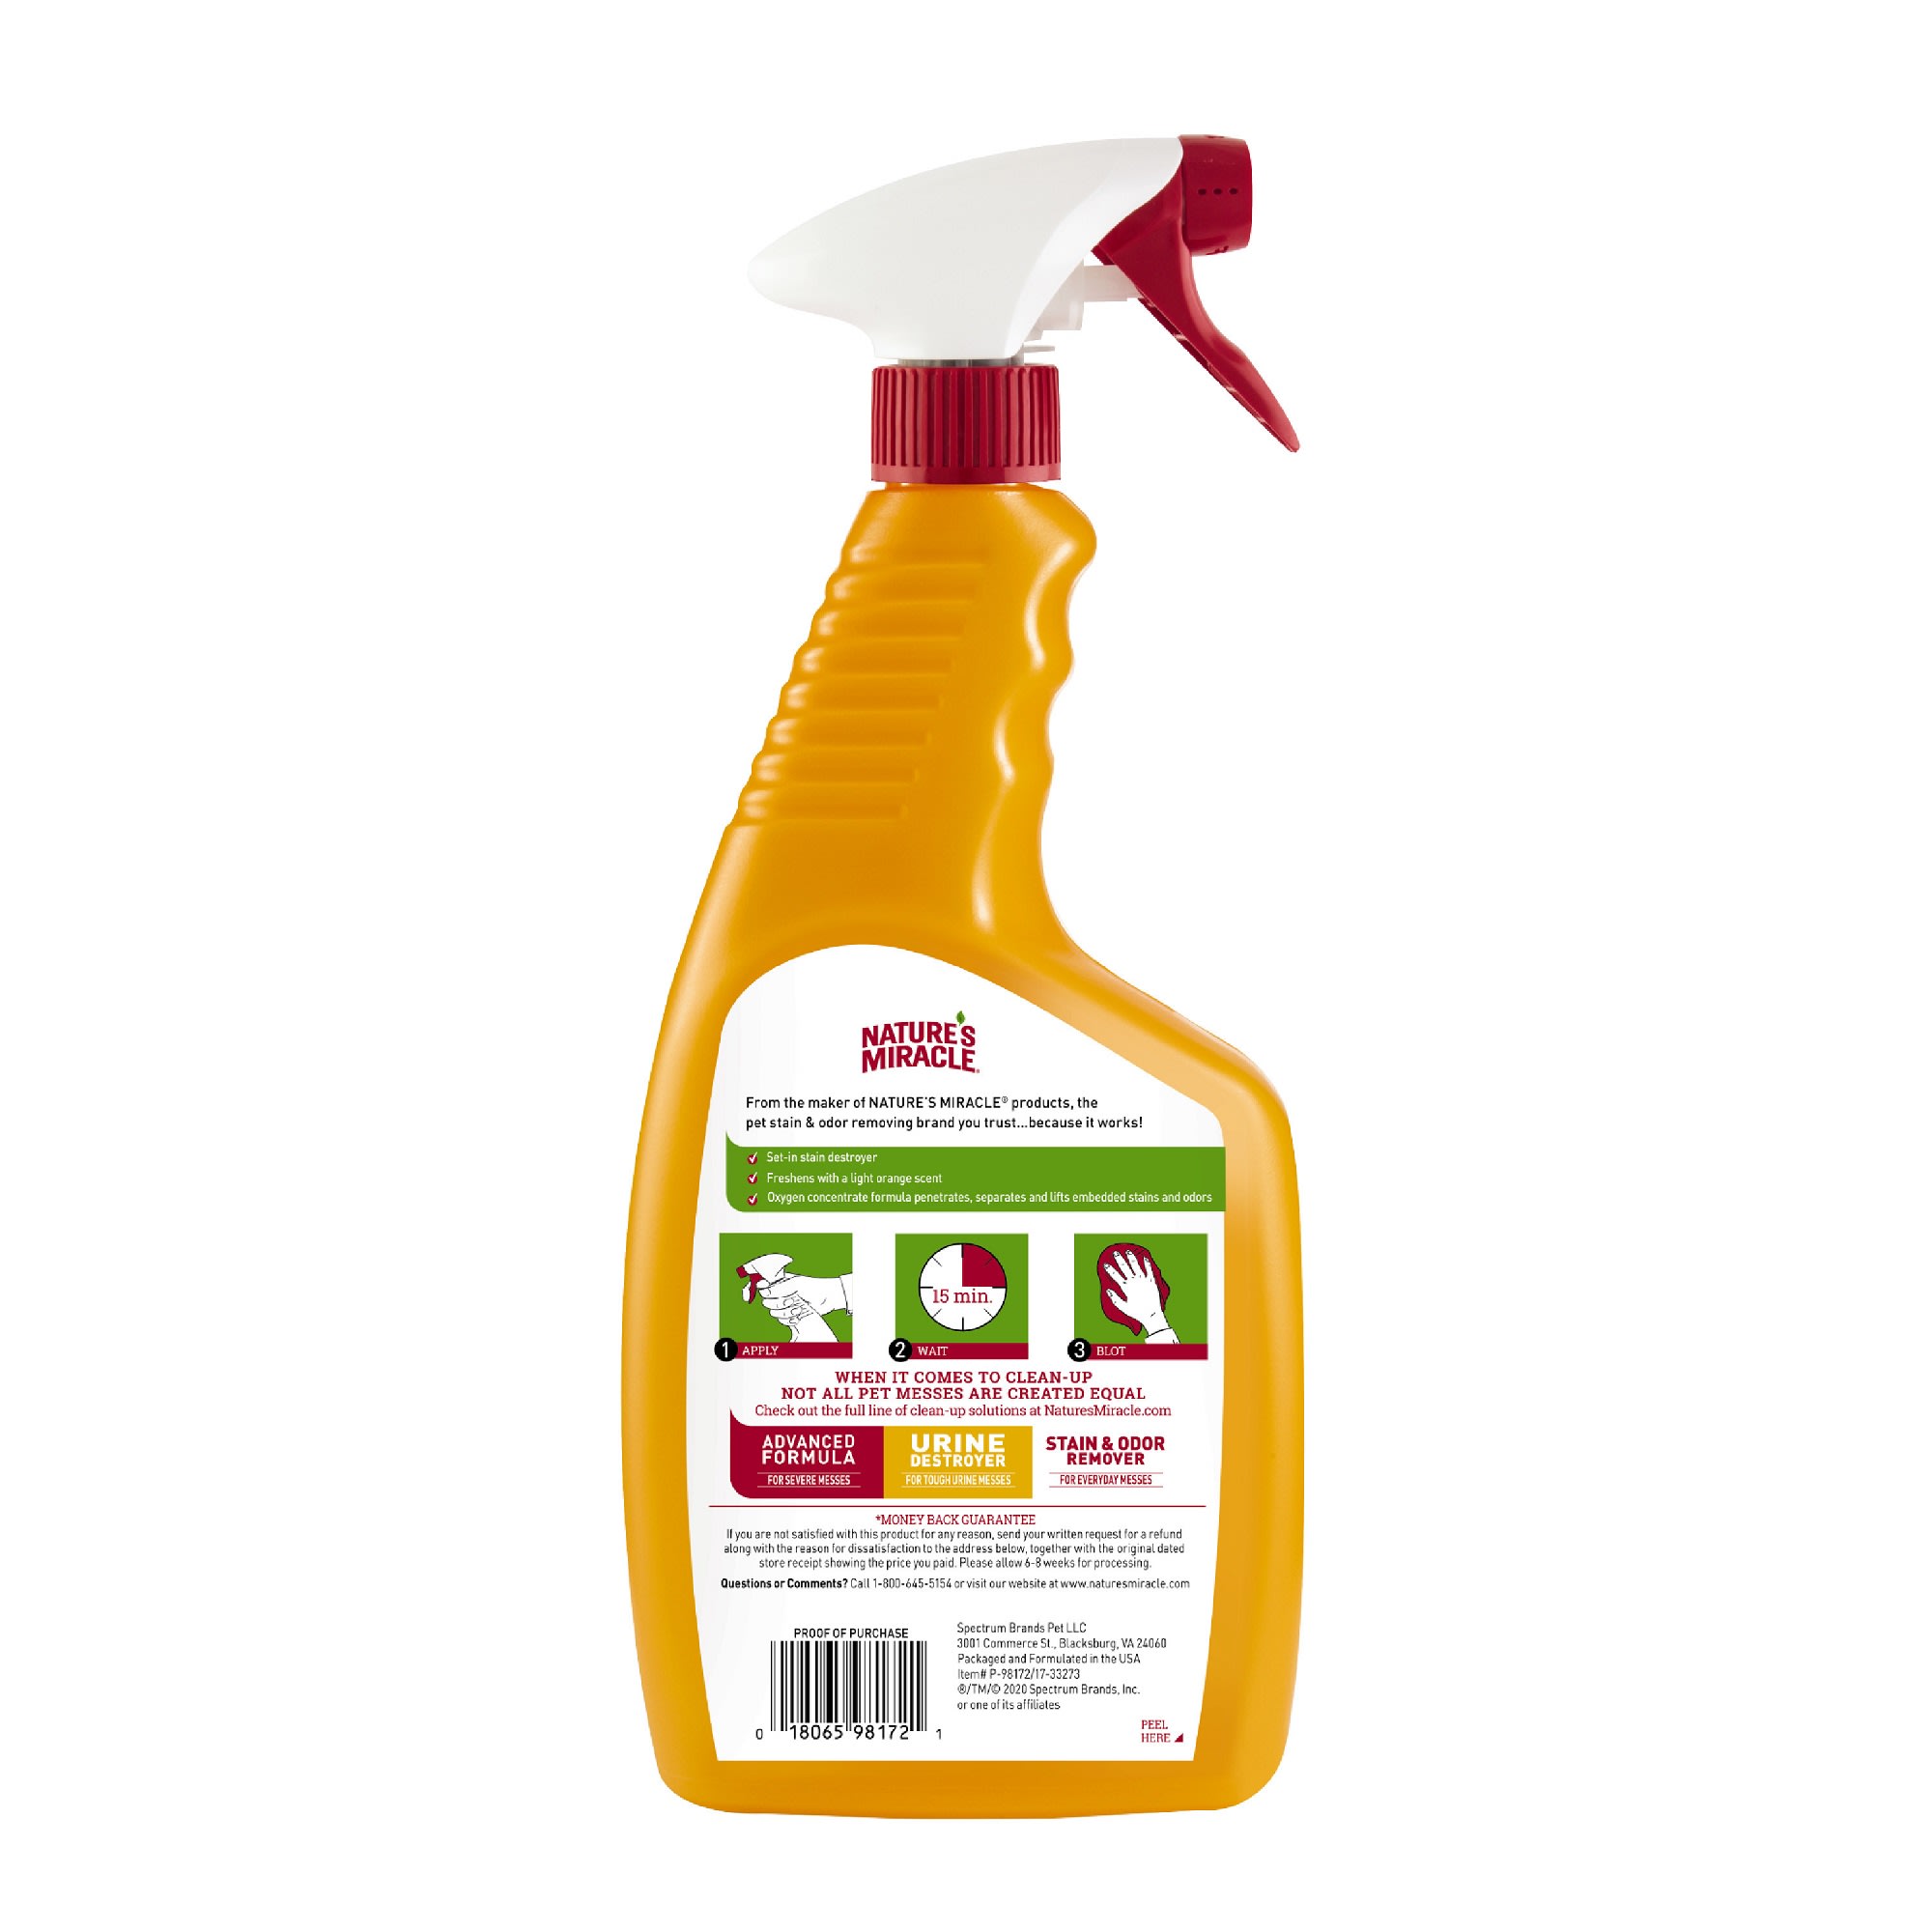 Orange Glo Oxi Clean Stain Remover, 21.5 Oz - GrandAndEssex